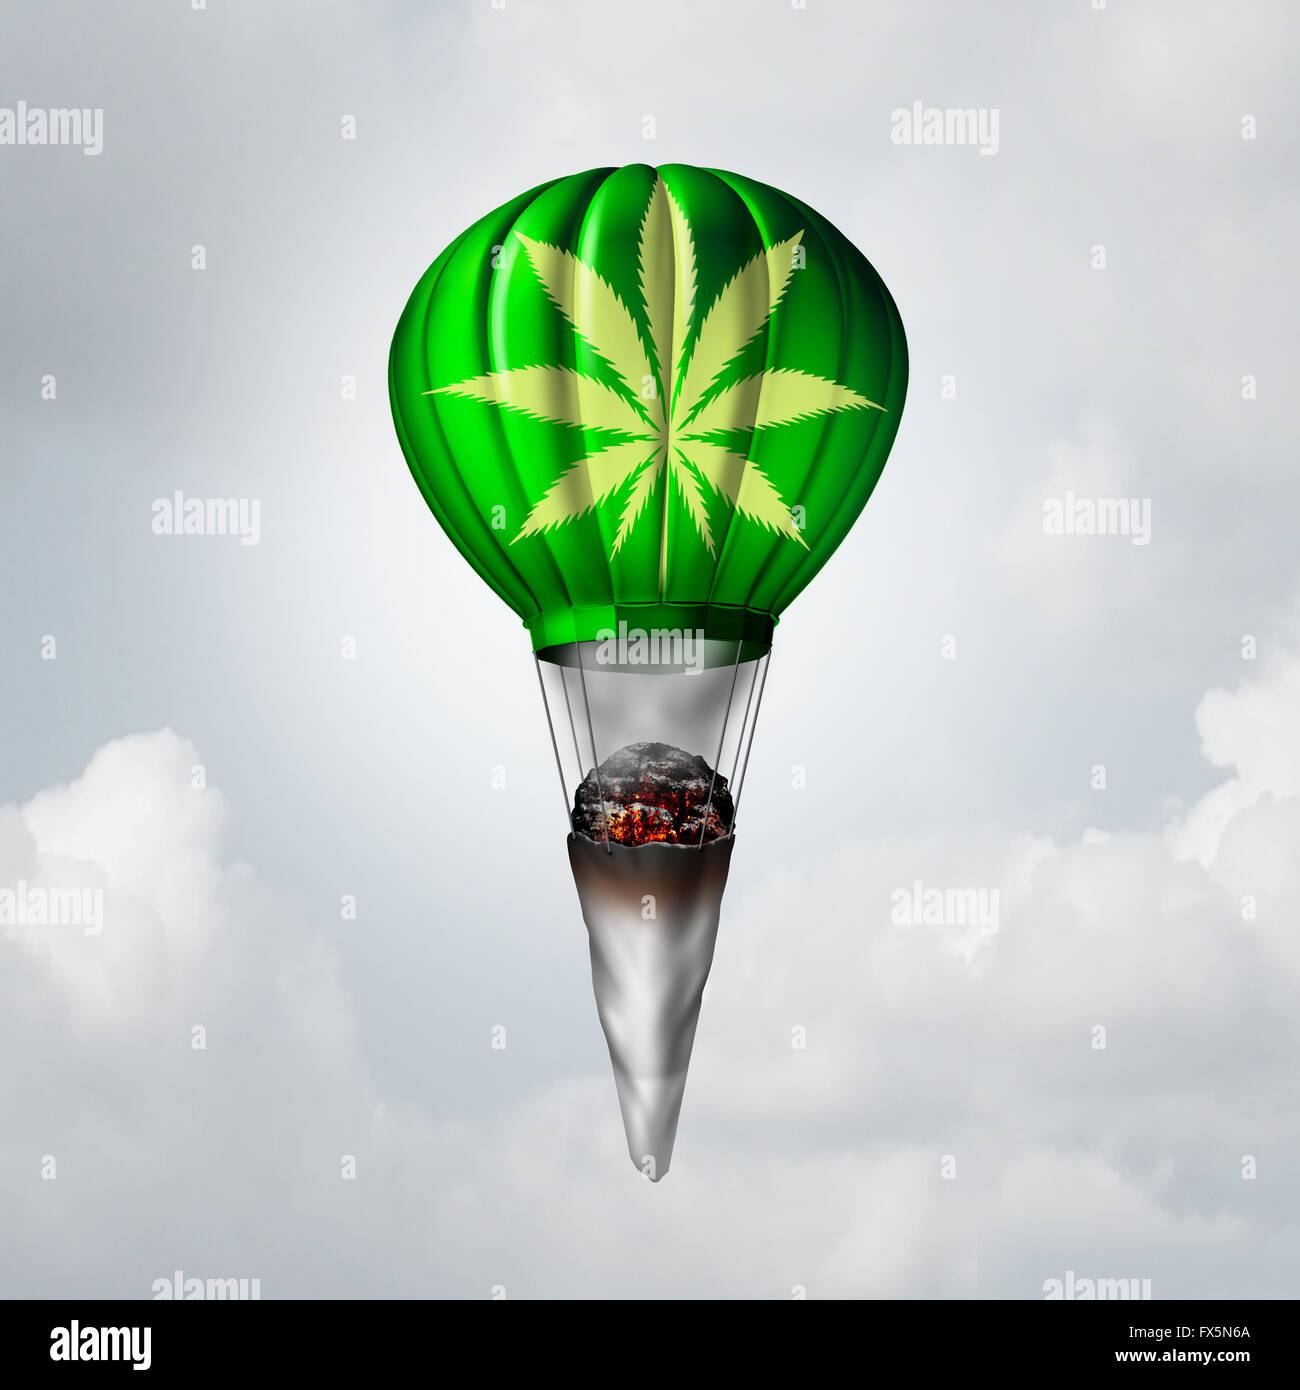 La marijuana concetto comune come una pentola di laminati illuminato con emissione di fumo e legato ad un aumento 3D illustrazione pallone aerostatico come una metafora per ottenere alta su una droga ricreativa o il sorgere di cannabis medicinale simbolo. Foto Stock